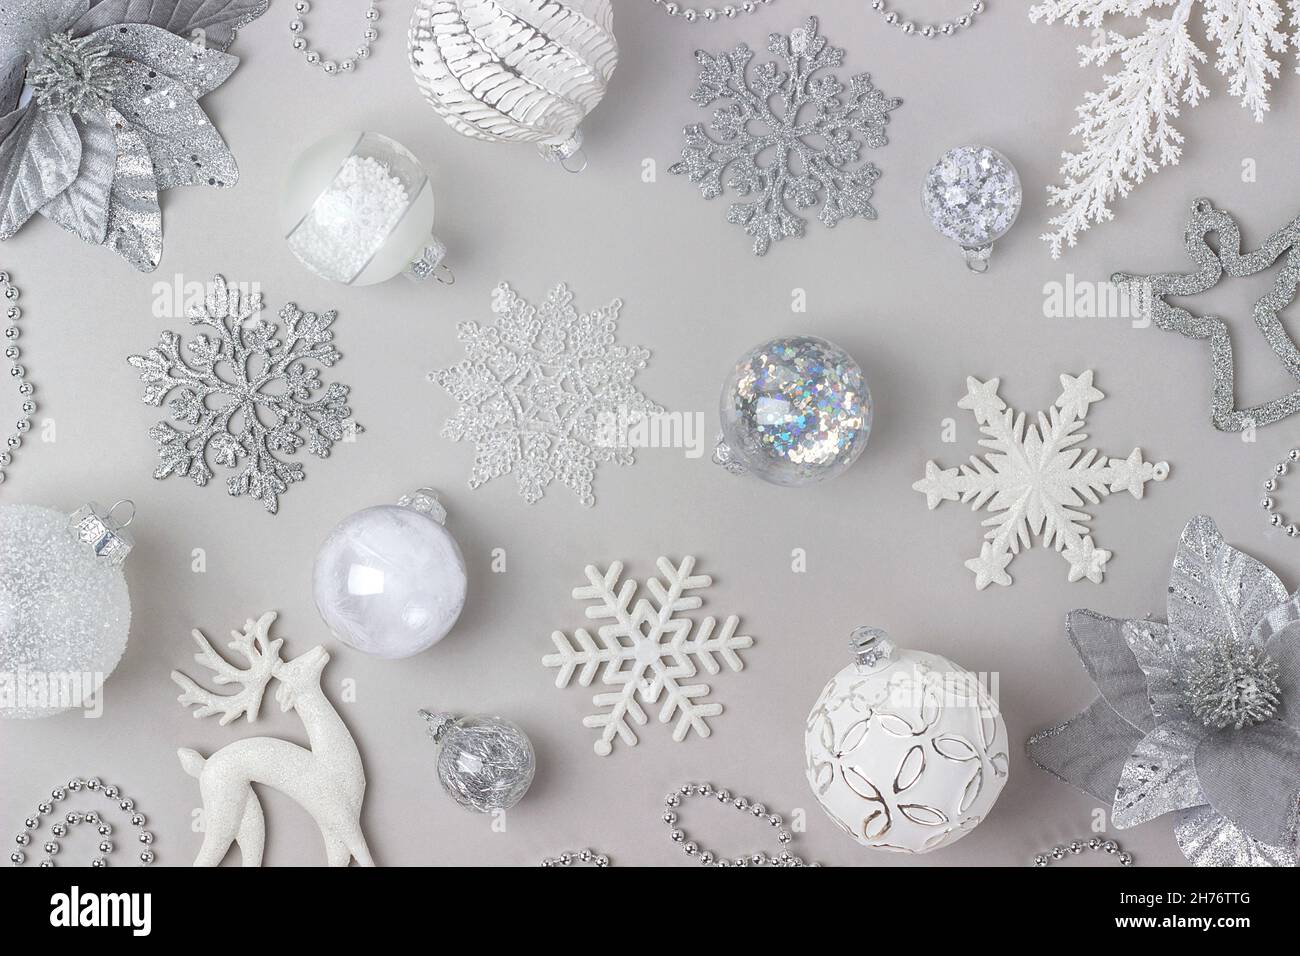 Motif des fêtes fait argent et blanc brillant décorations de noël sur fond gris.Concept joyeux Noël, Noël et nouvel an.Vue de dessus, Flat lay. Banque D'Images